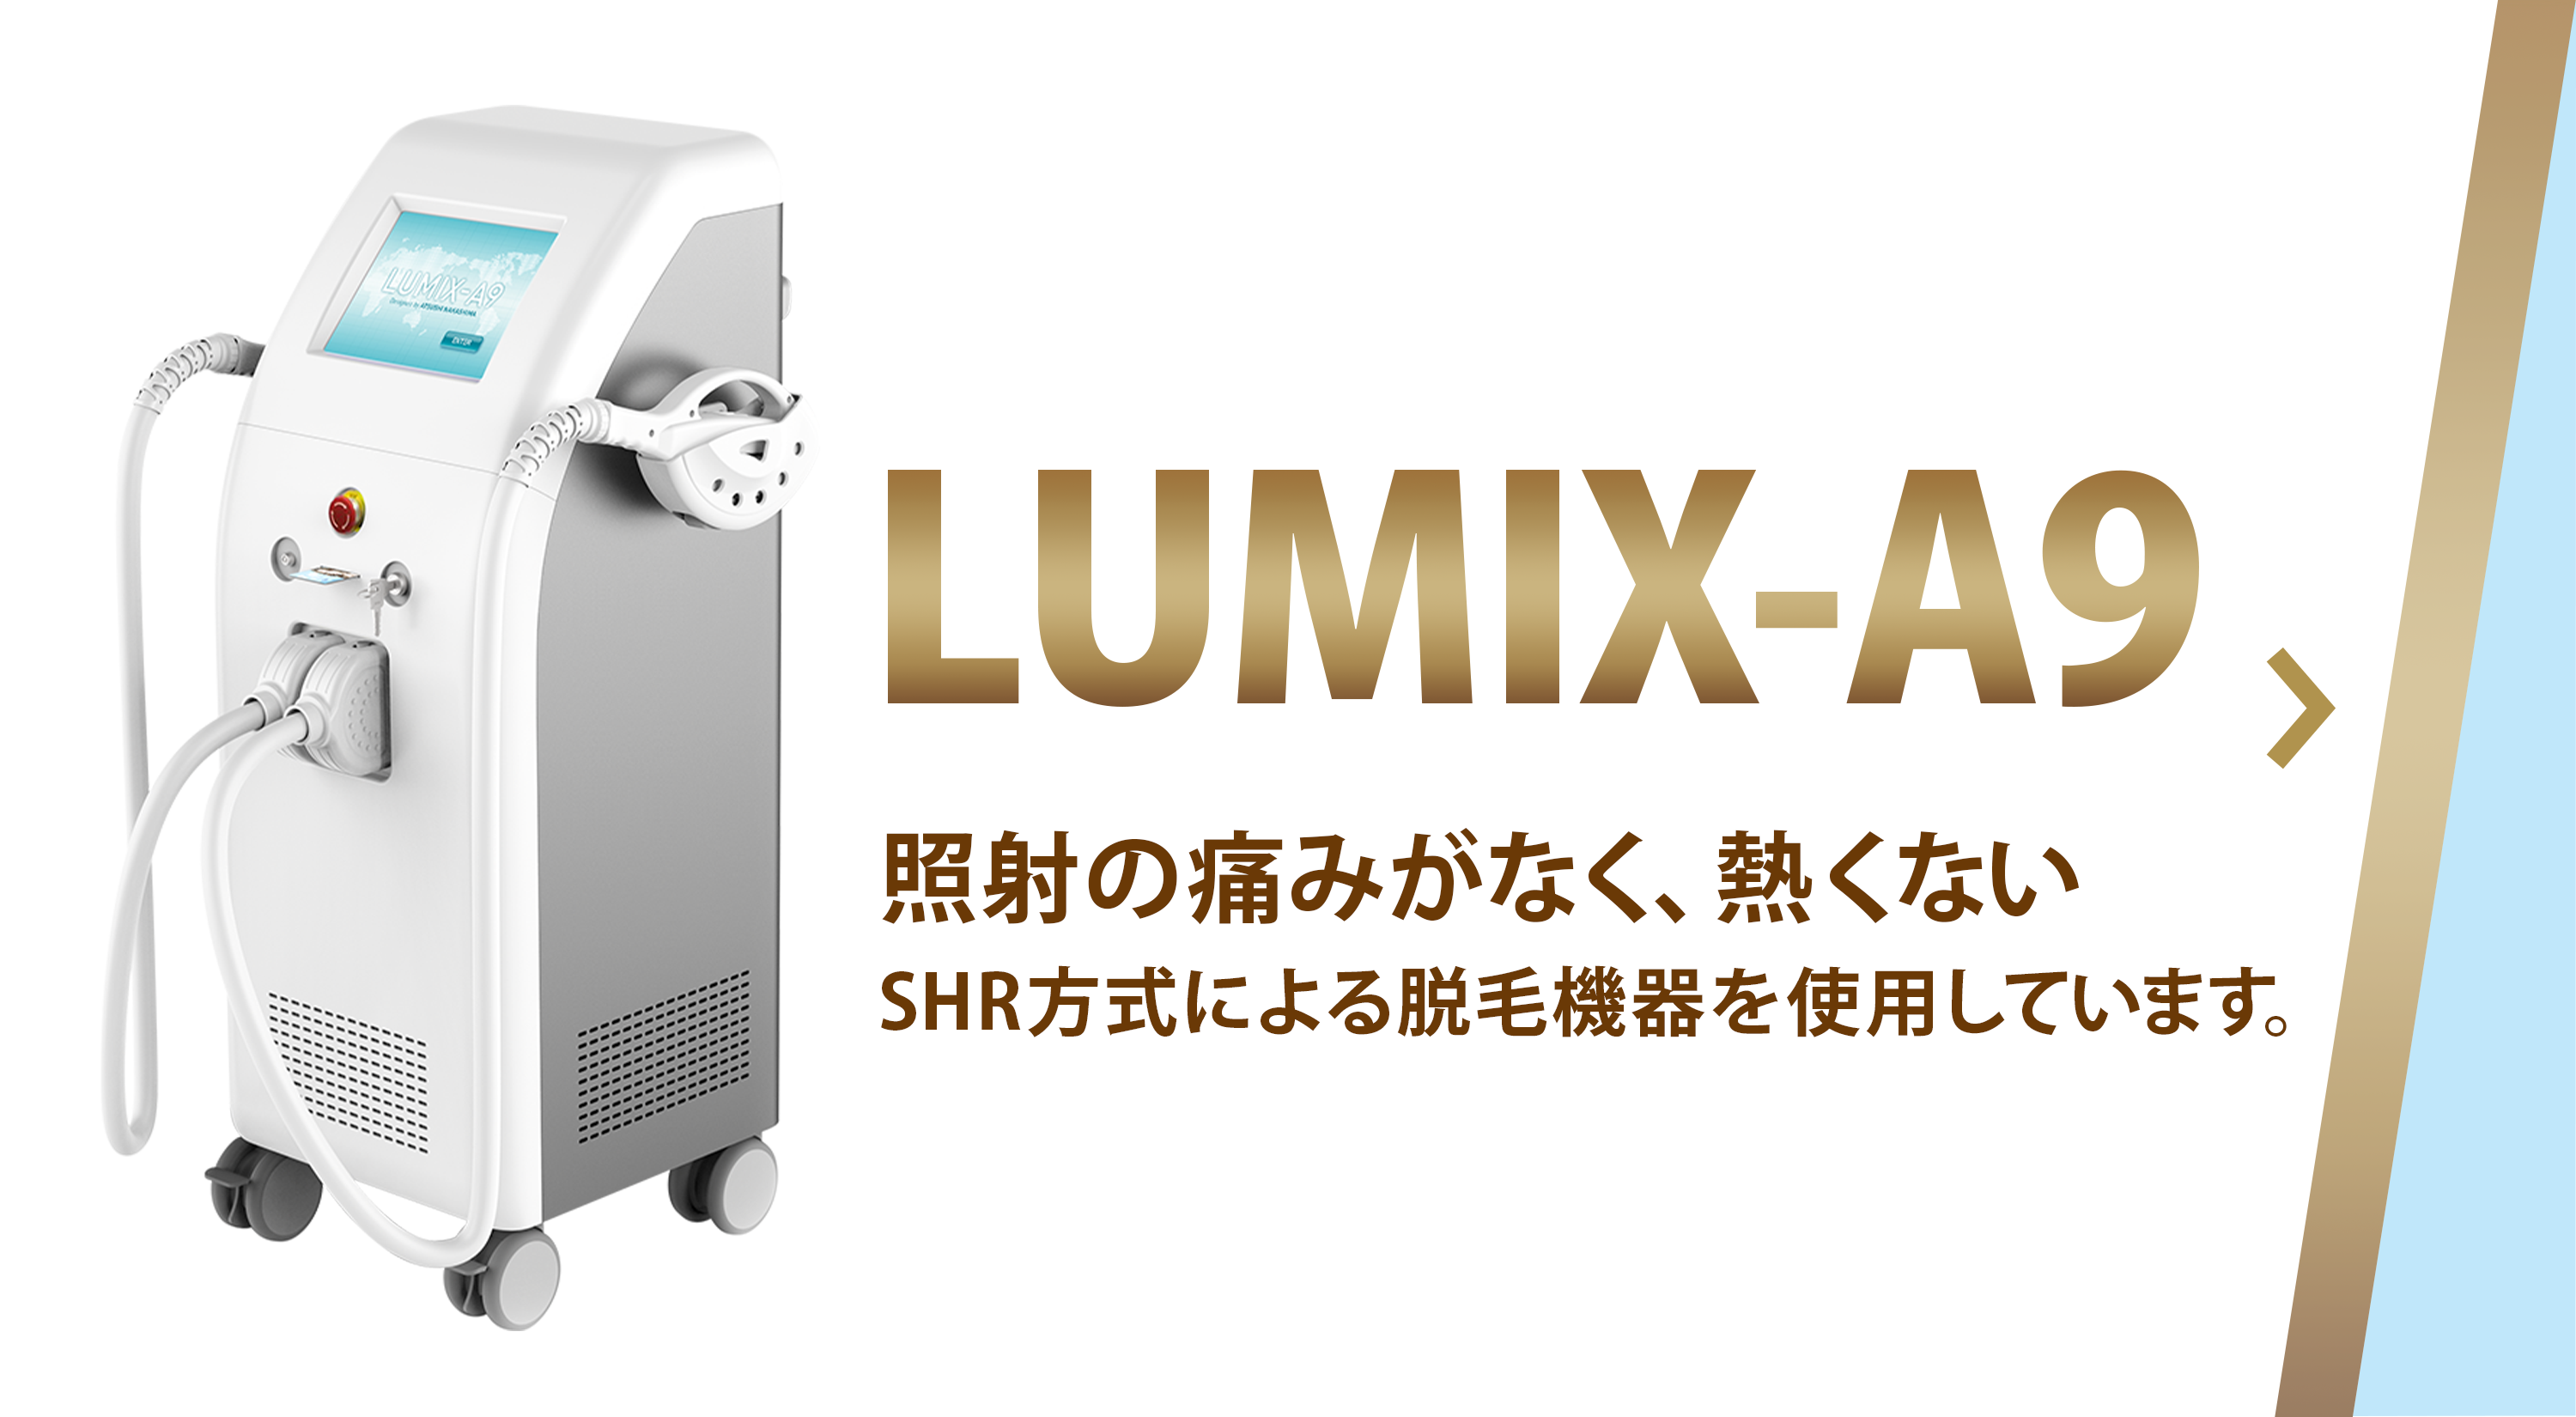 LUMIX-A9 照射の痛みがなく、熱くないSHR方式による脱毛機器